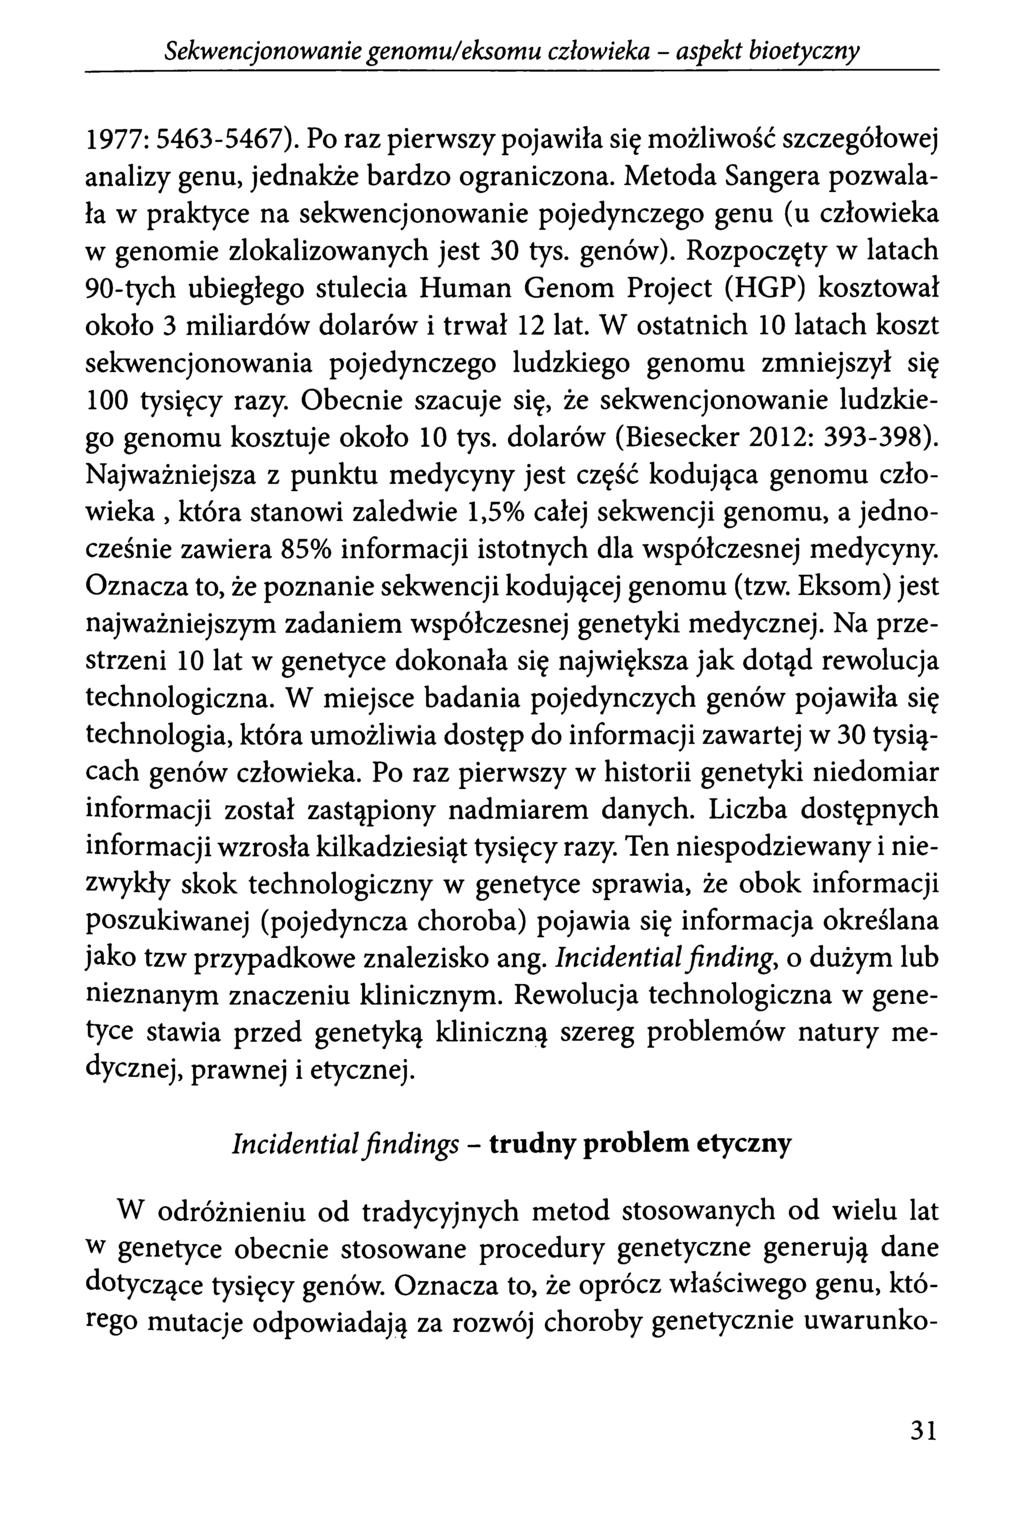 Sekwencjonowanie genomu!eksomu człowieka - aspekt bioetyczny 1977: 5463-5467). Po raz pierwszy pojawiła się możliwość szczegółowej analizy genu, jednakże bardzo ograniczona.